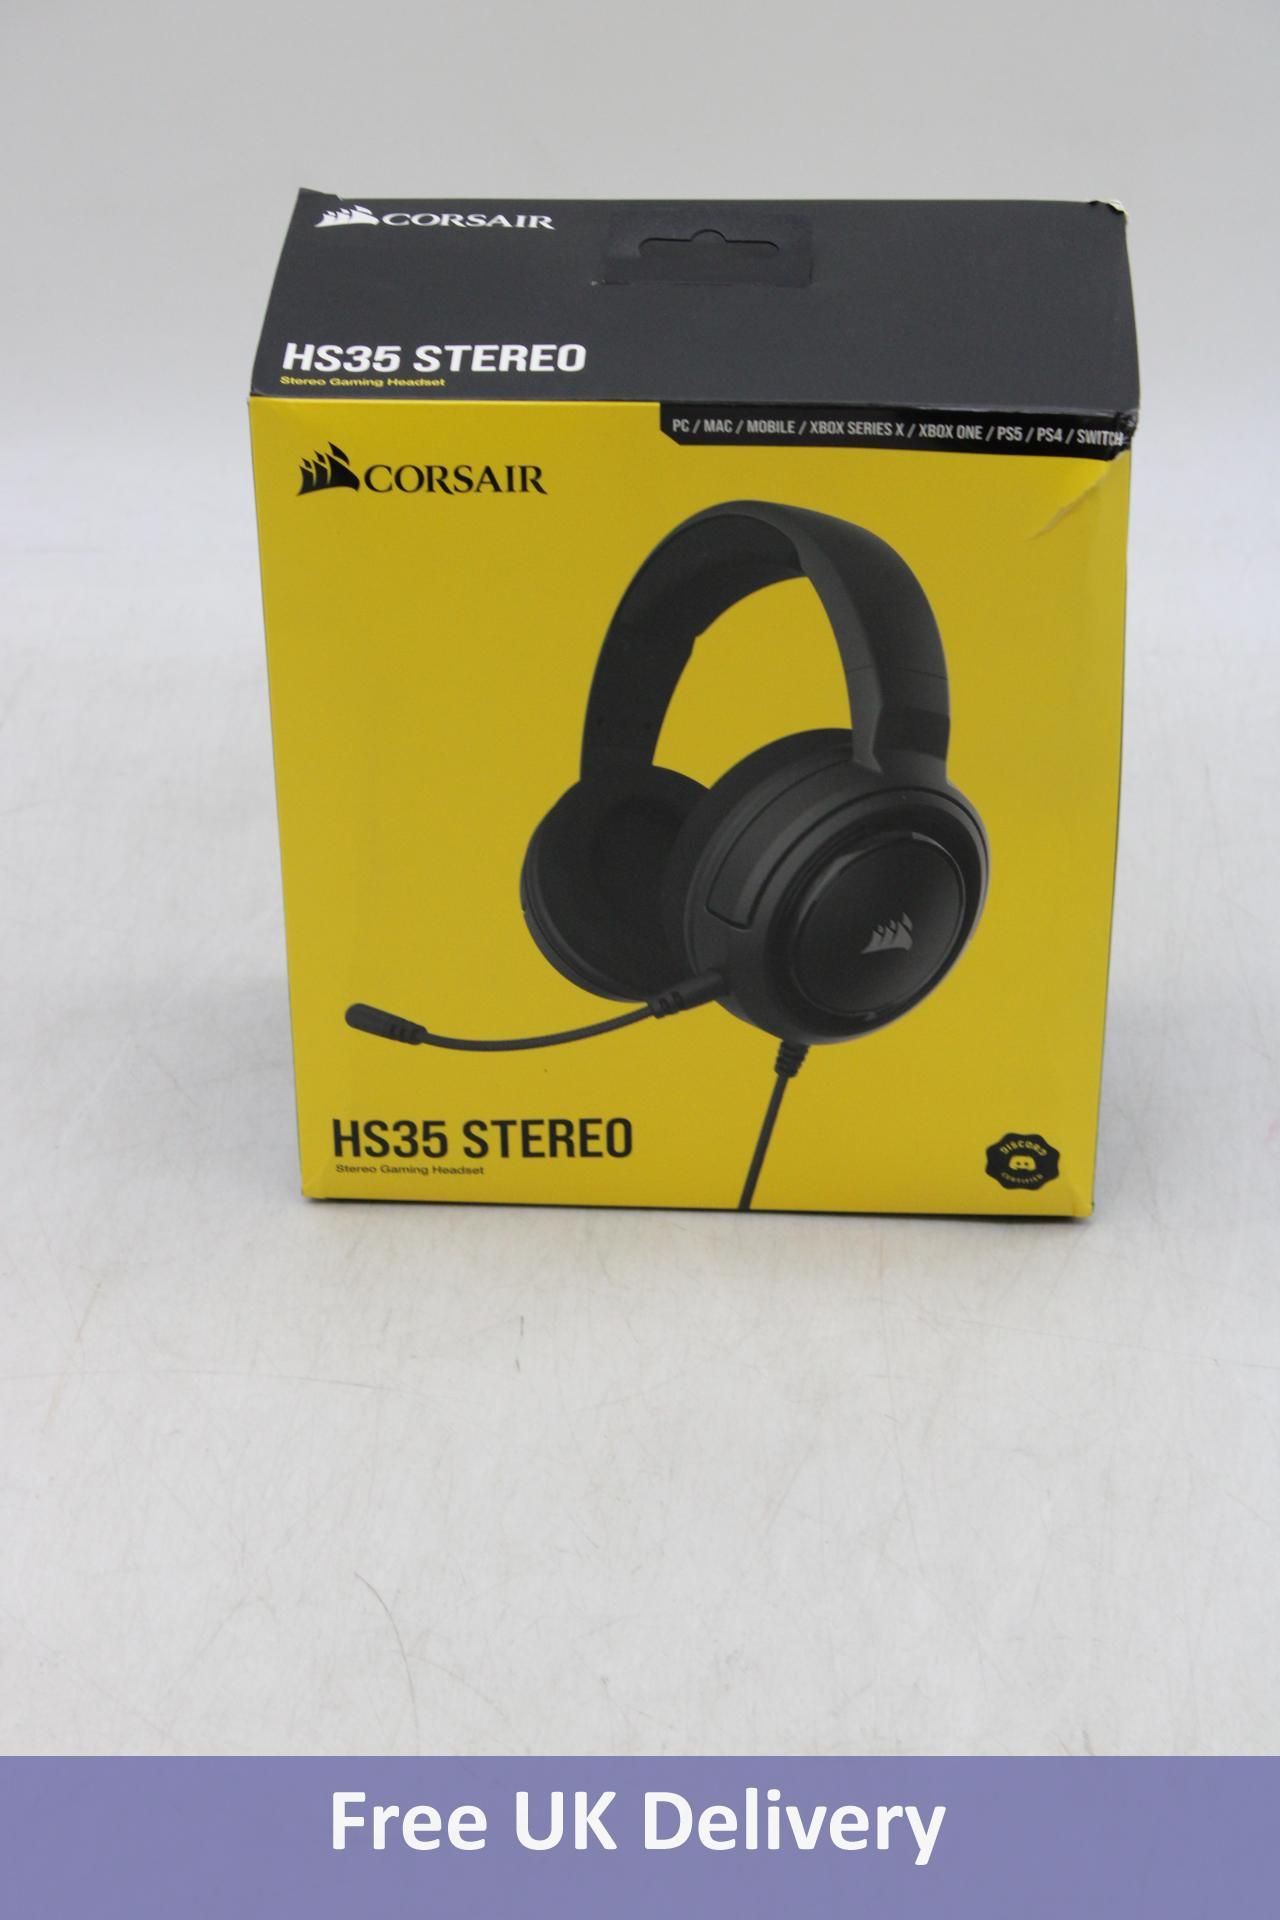 Corsair HS35 Stereo Gaming Headset, Black. Box damaged